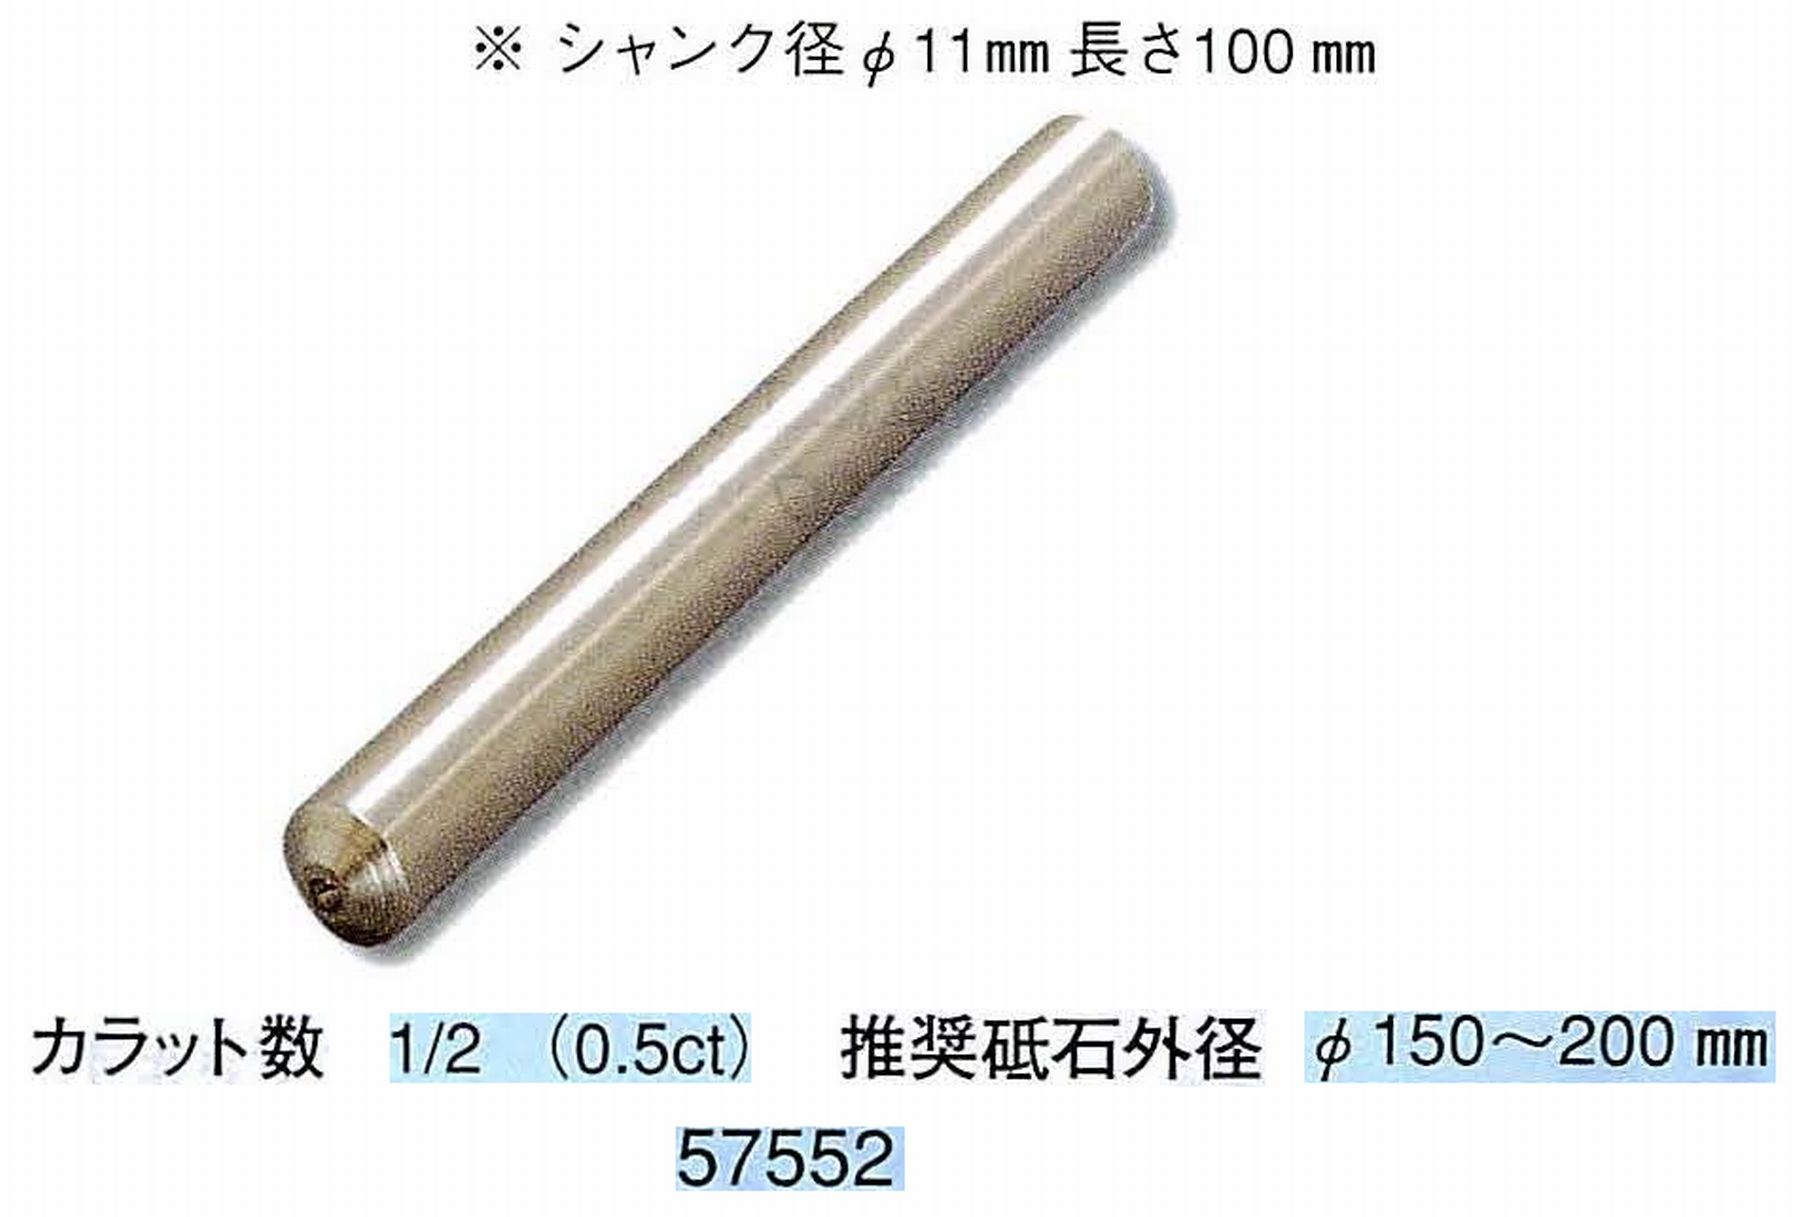 ナカニシ/NAKANISHI 天然ダイヤモンド 単石ドレッサ(シャンク径φ11mm 長さ100mm) 57552